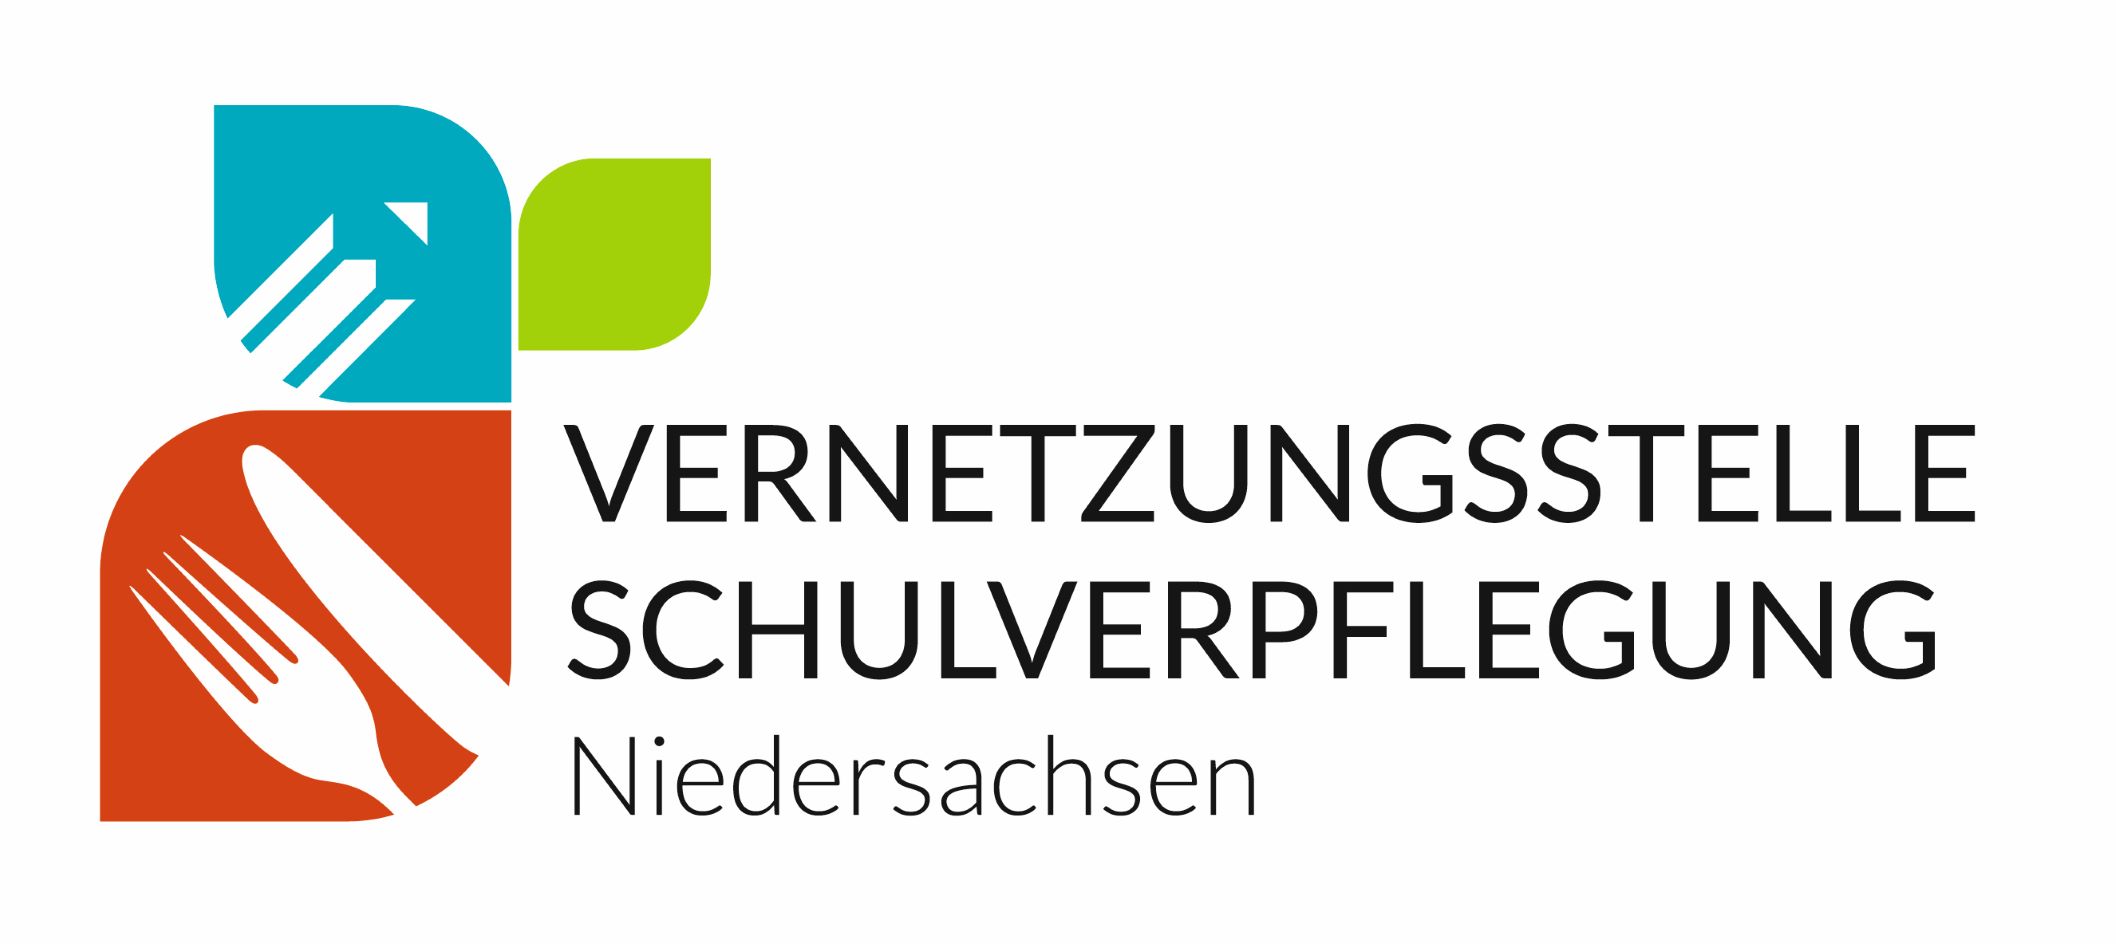 Vernetzungsstelle Schulverpflegung Niedersachsen